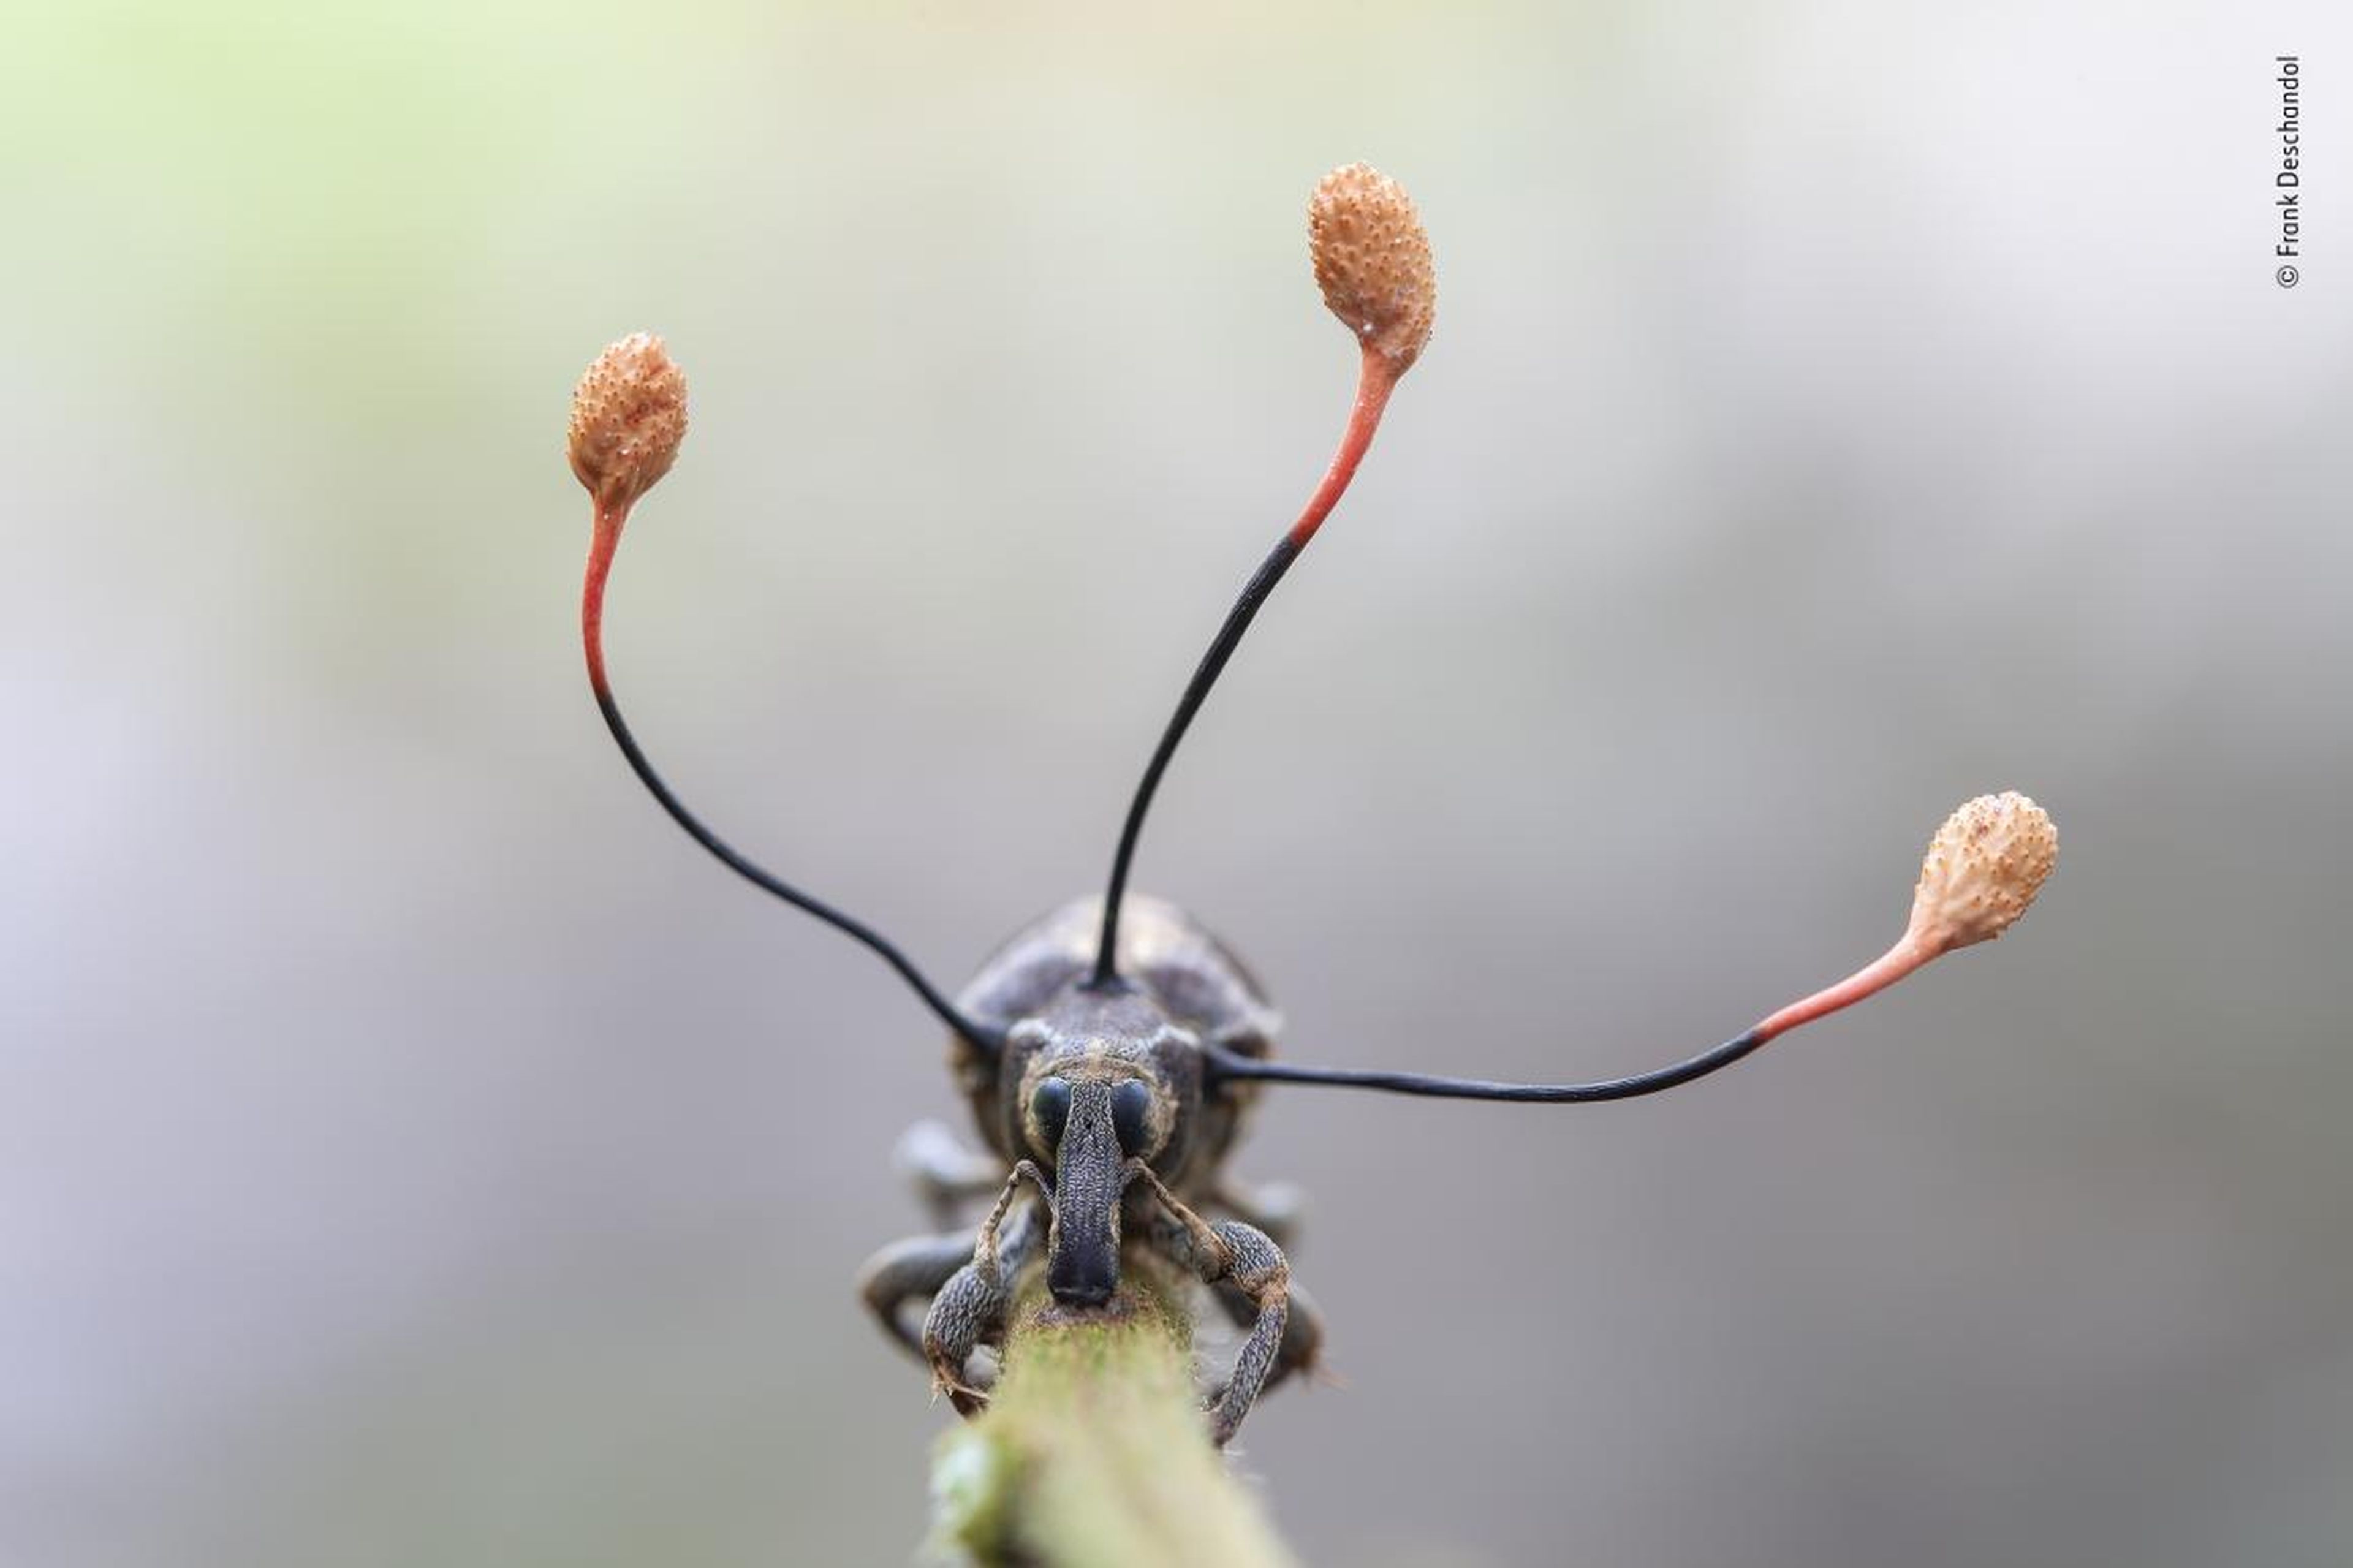 Un insecto muerto del que salen tres hongos salvajes en la amazonia peruana.